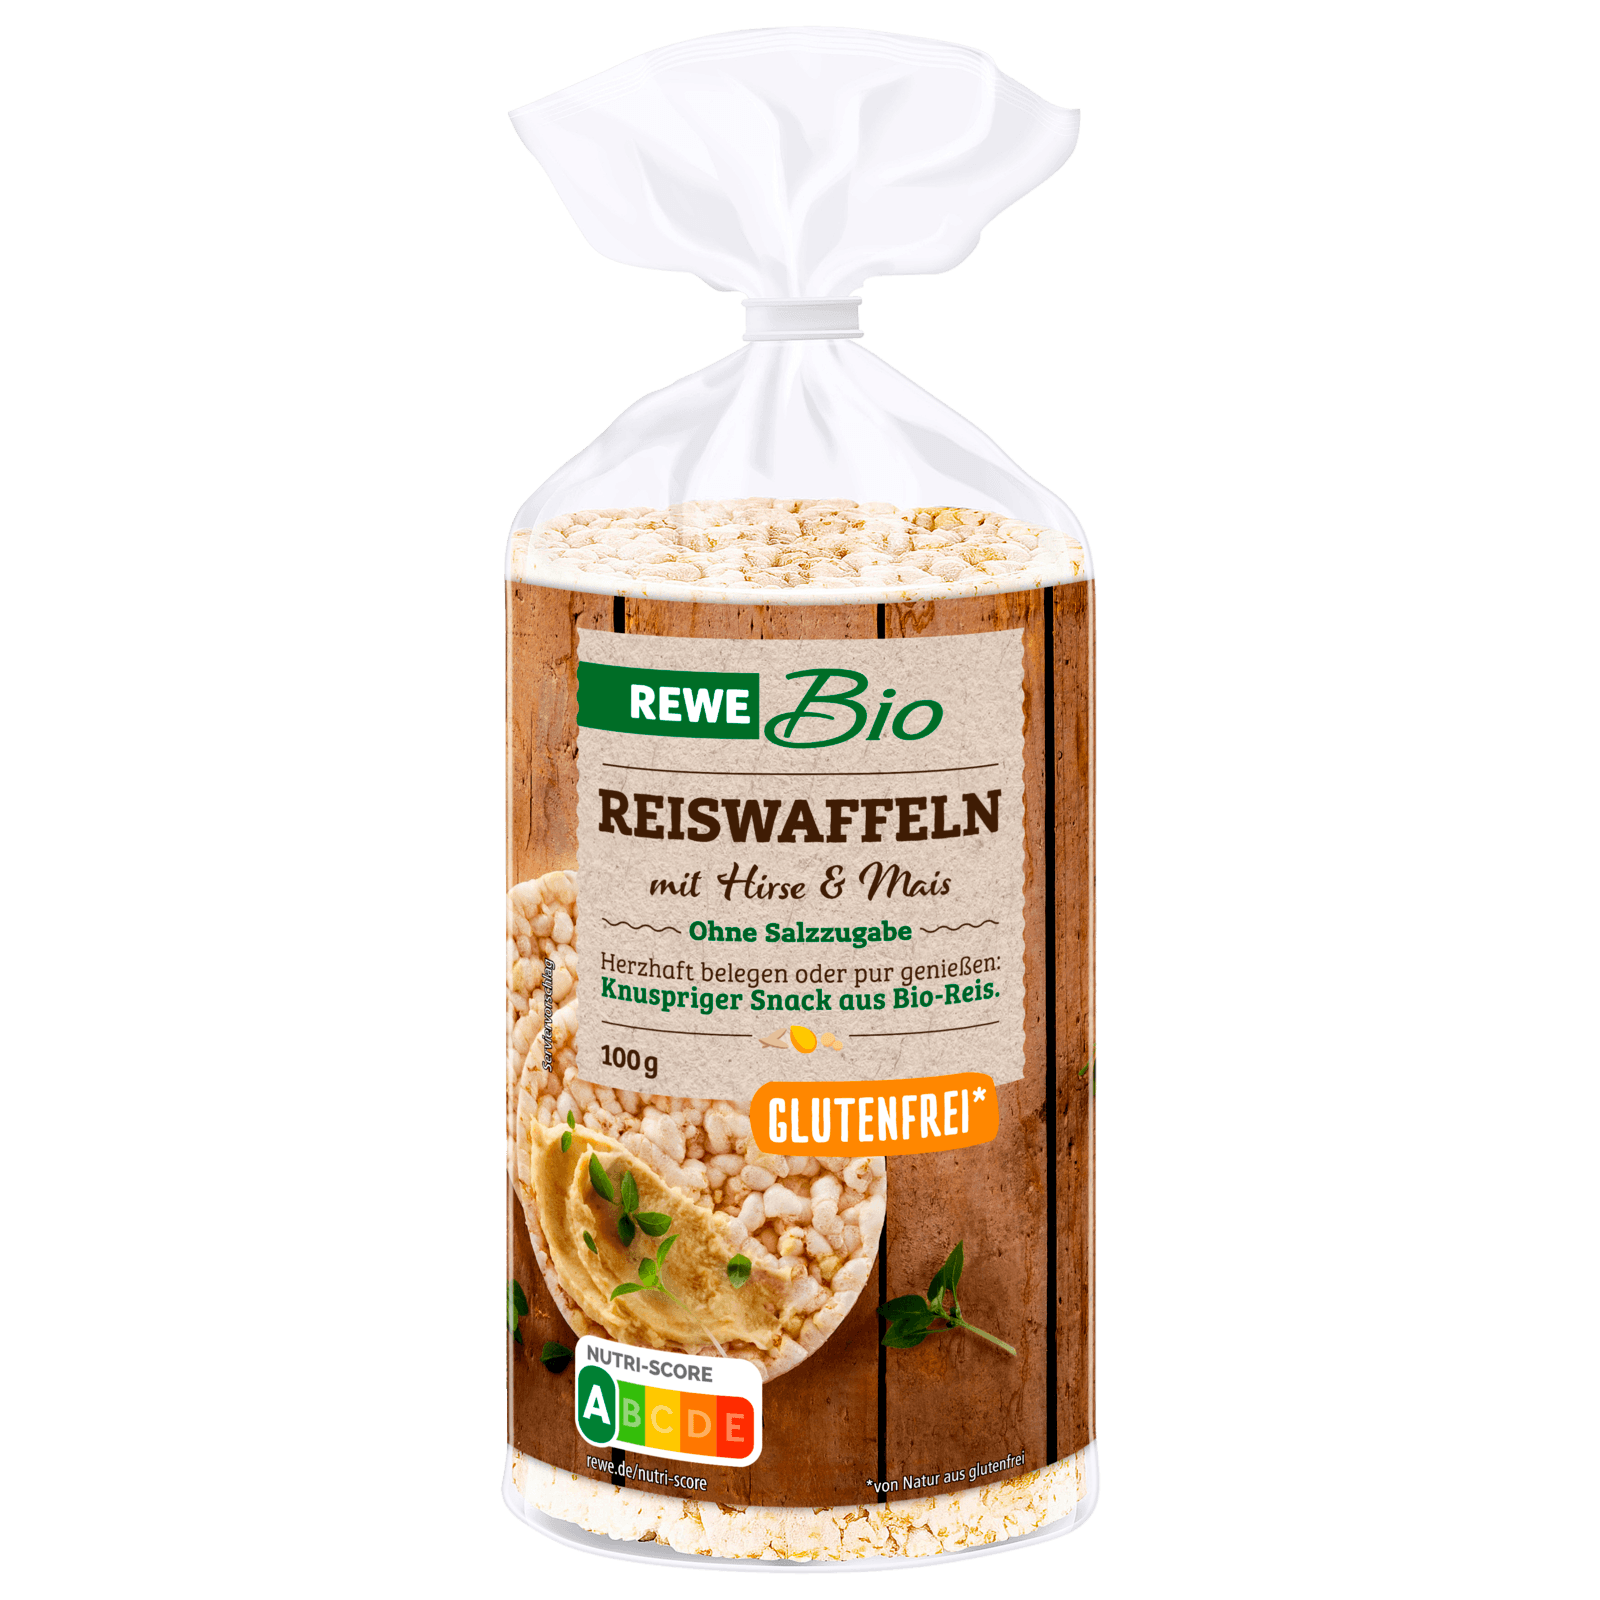 REWE Bio Reiswaffeln mit Hirse und Mais 100g bei REWE online bestellen!